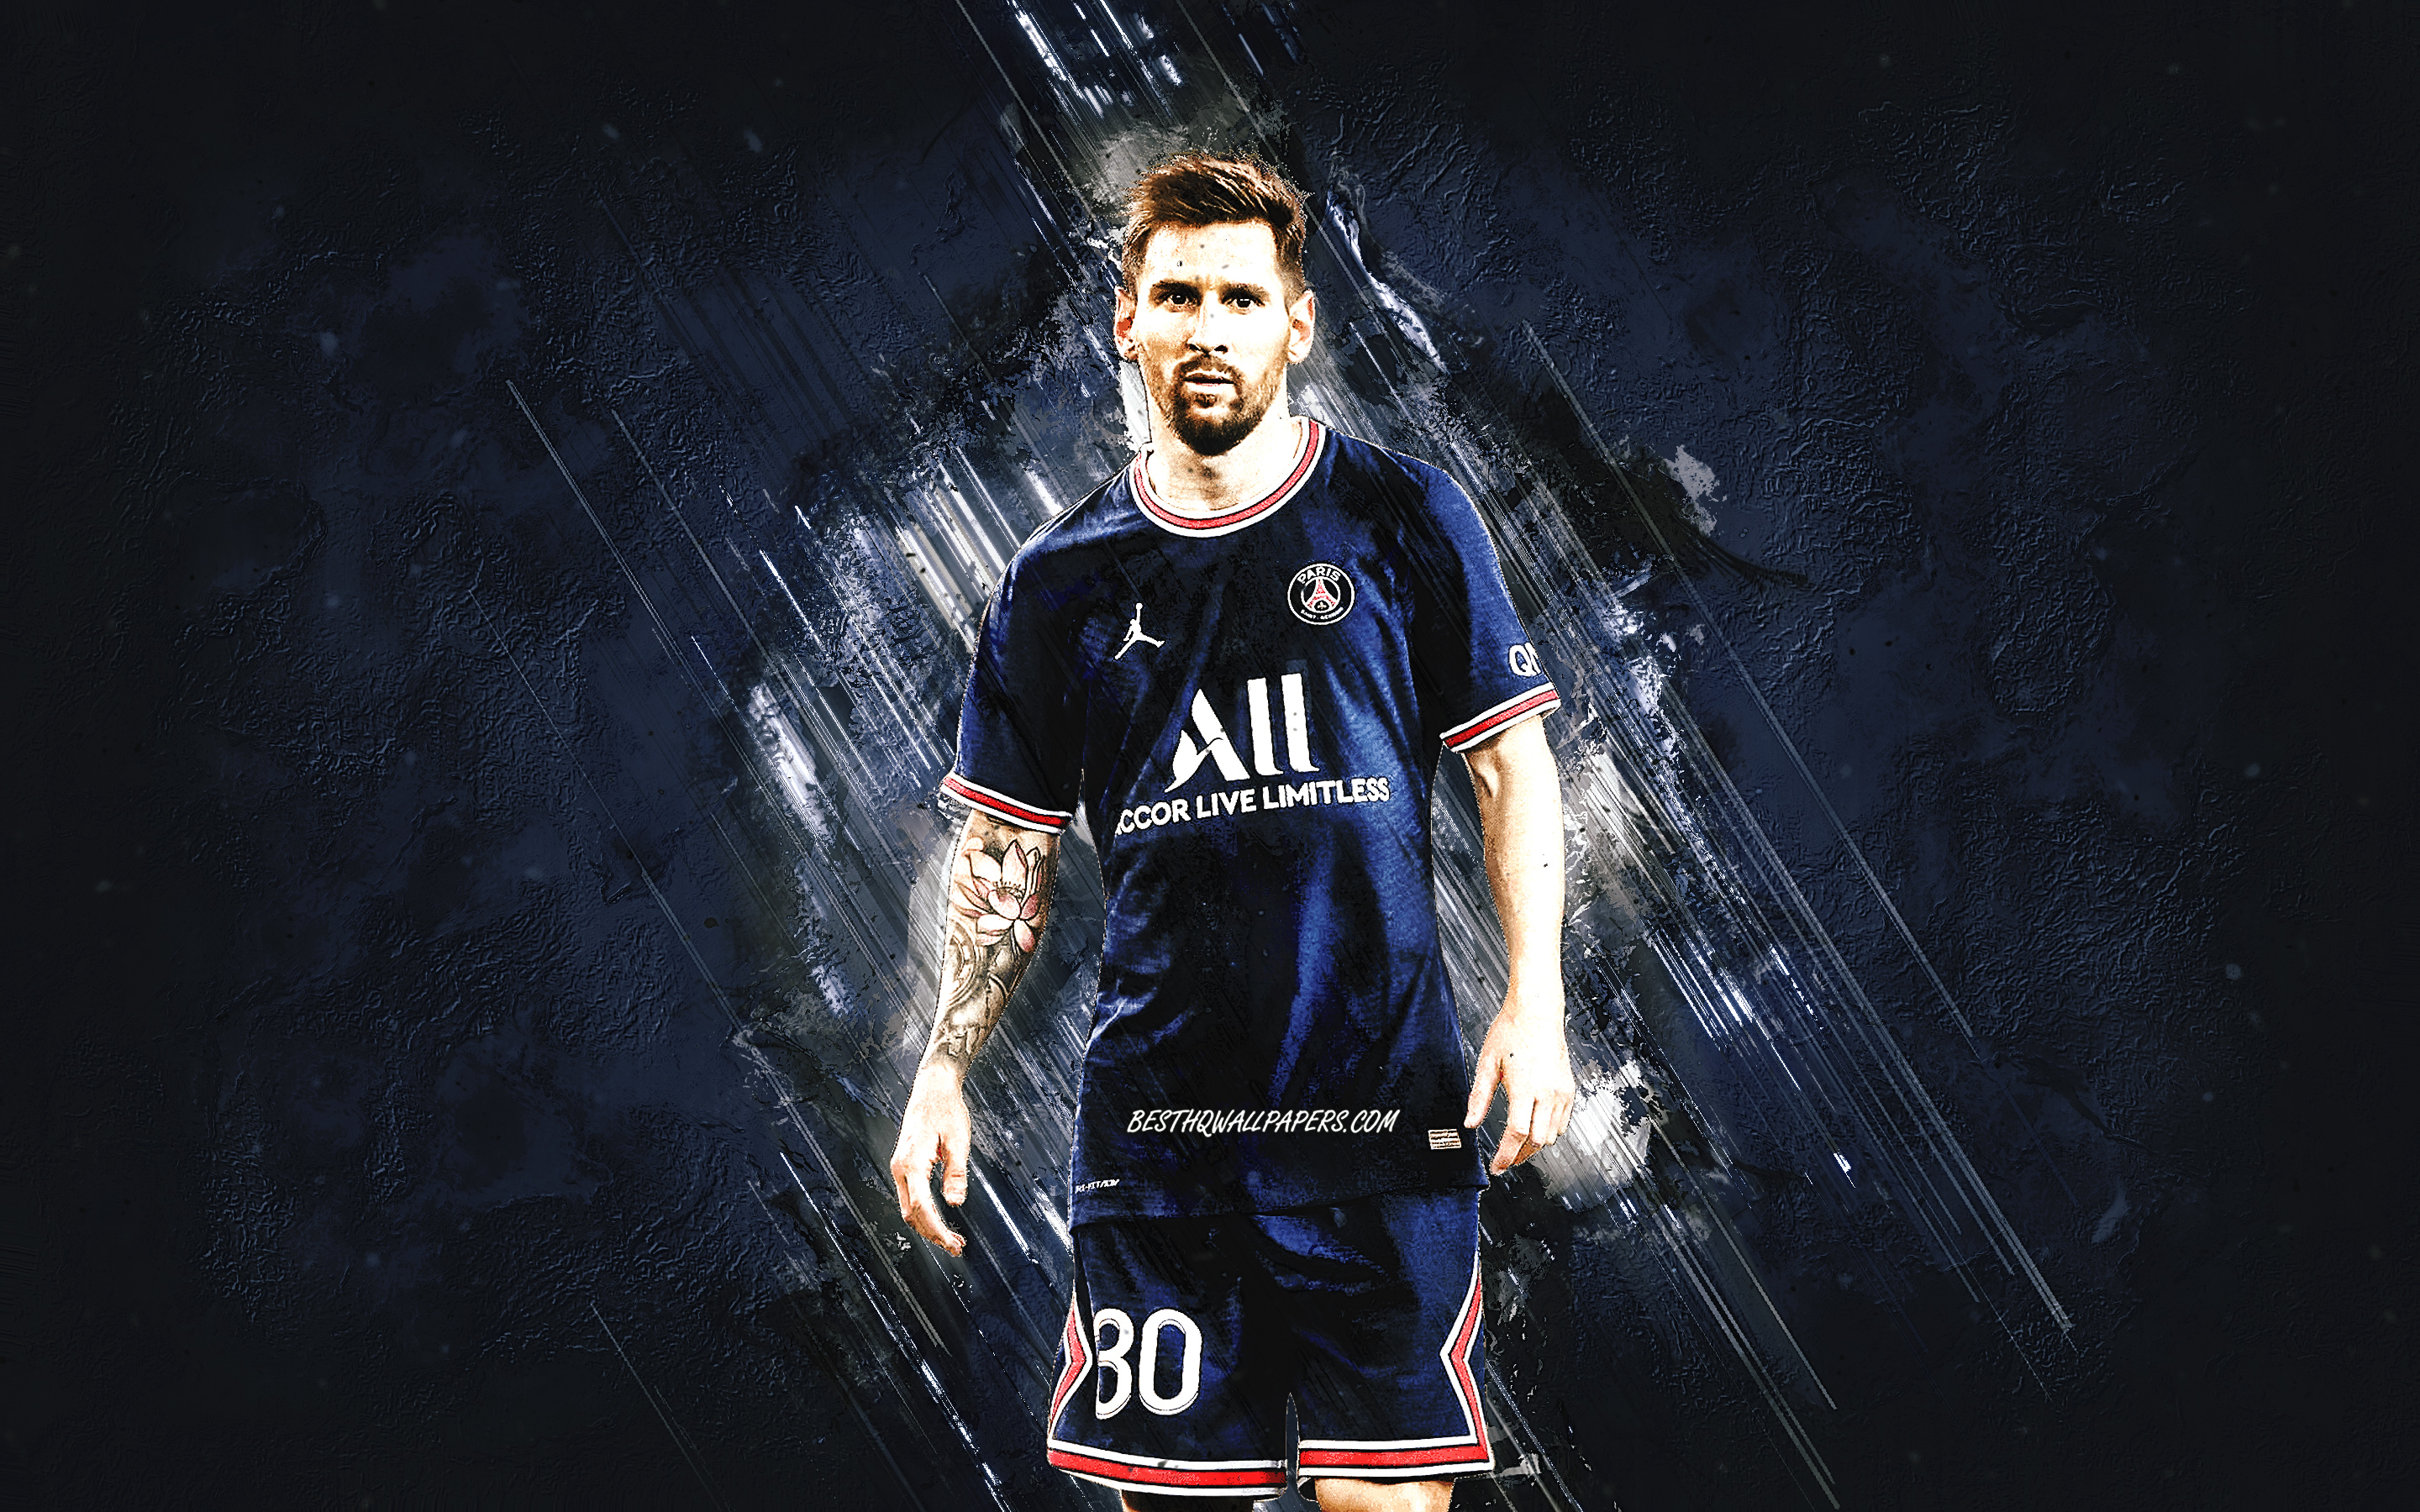 Màn hình nền Lionel Messi PSG đầy màu sắc sẽ khiến bạn thích thú. Xem hình ảnh liên quan để tải xuống những hình nền HD về chân dung của Messi trong chiếc áo PSG mới.